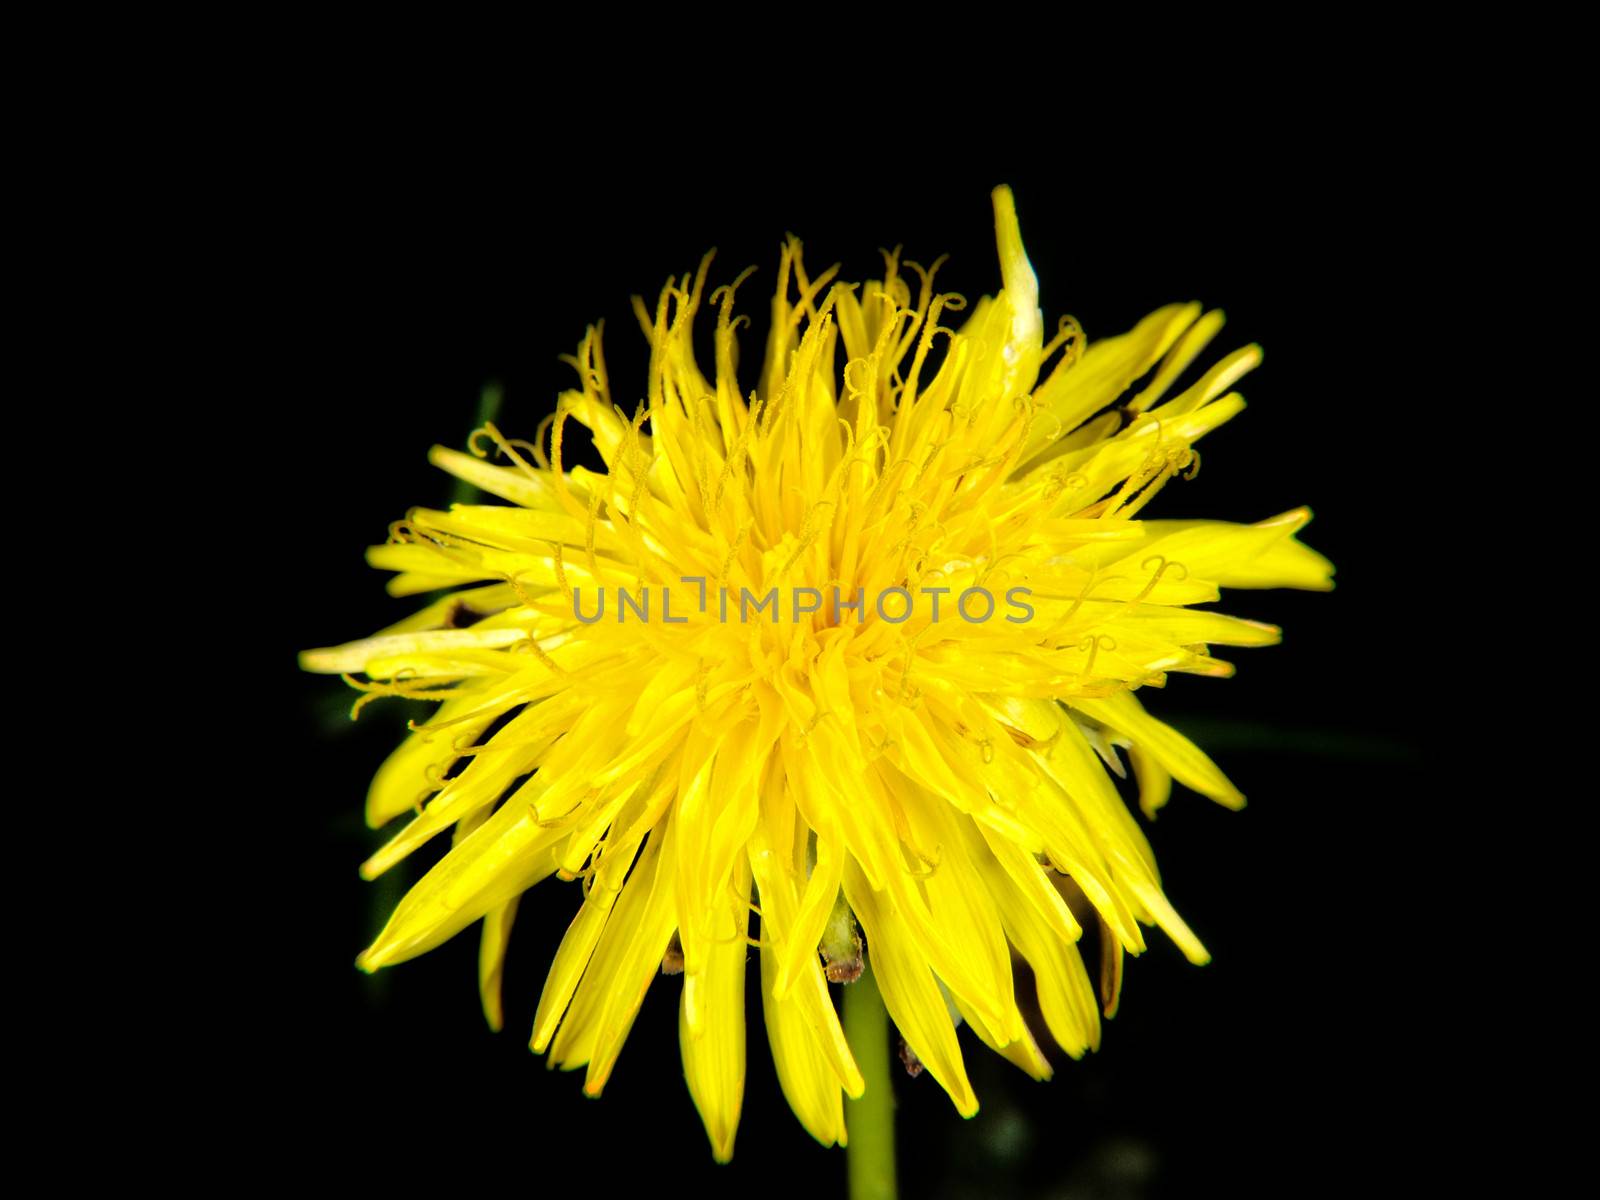 Yellow dandelion flower by Arvebettum